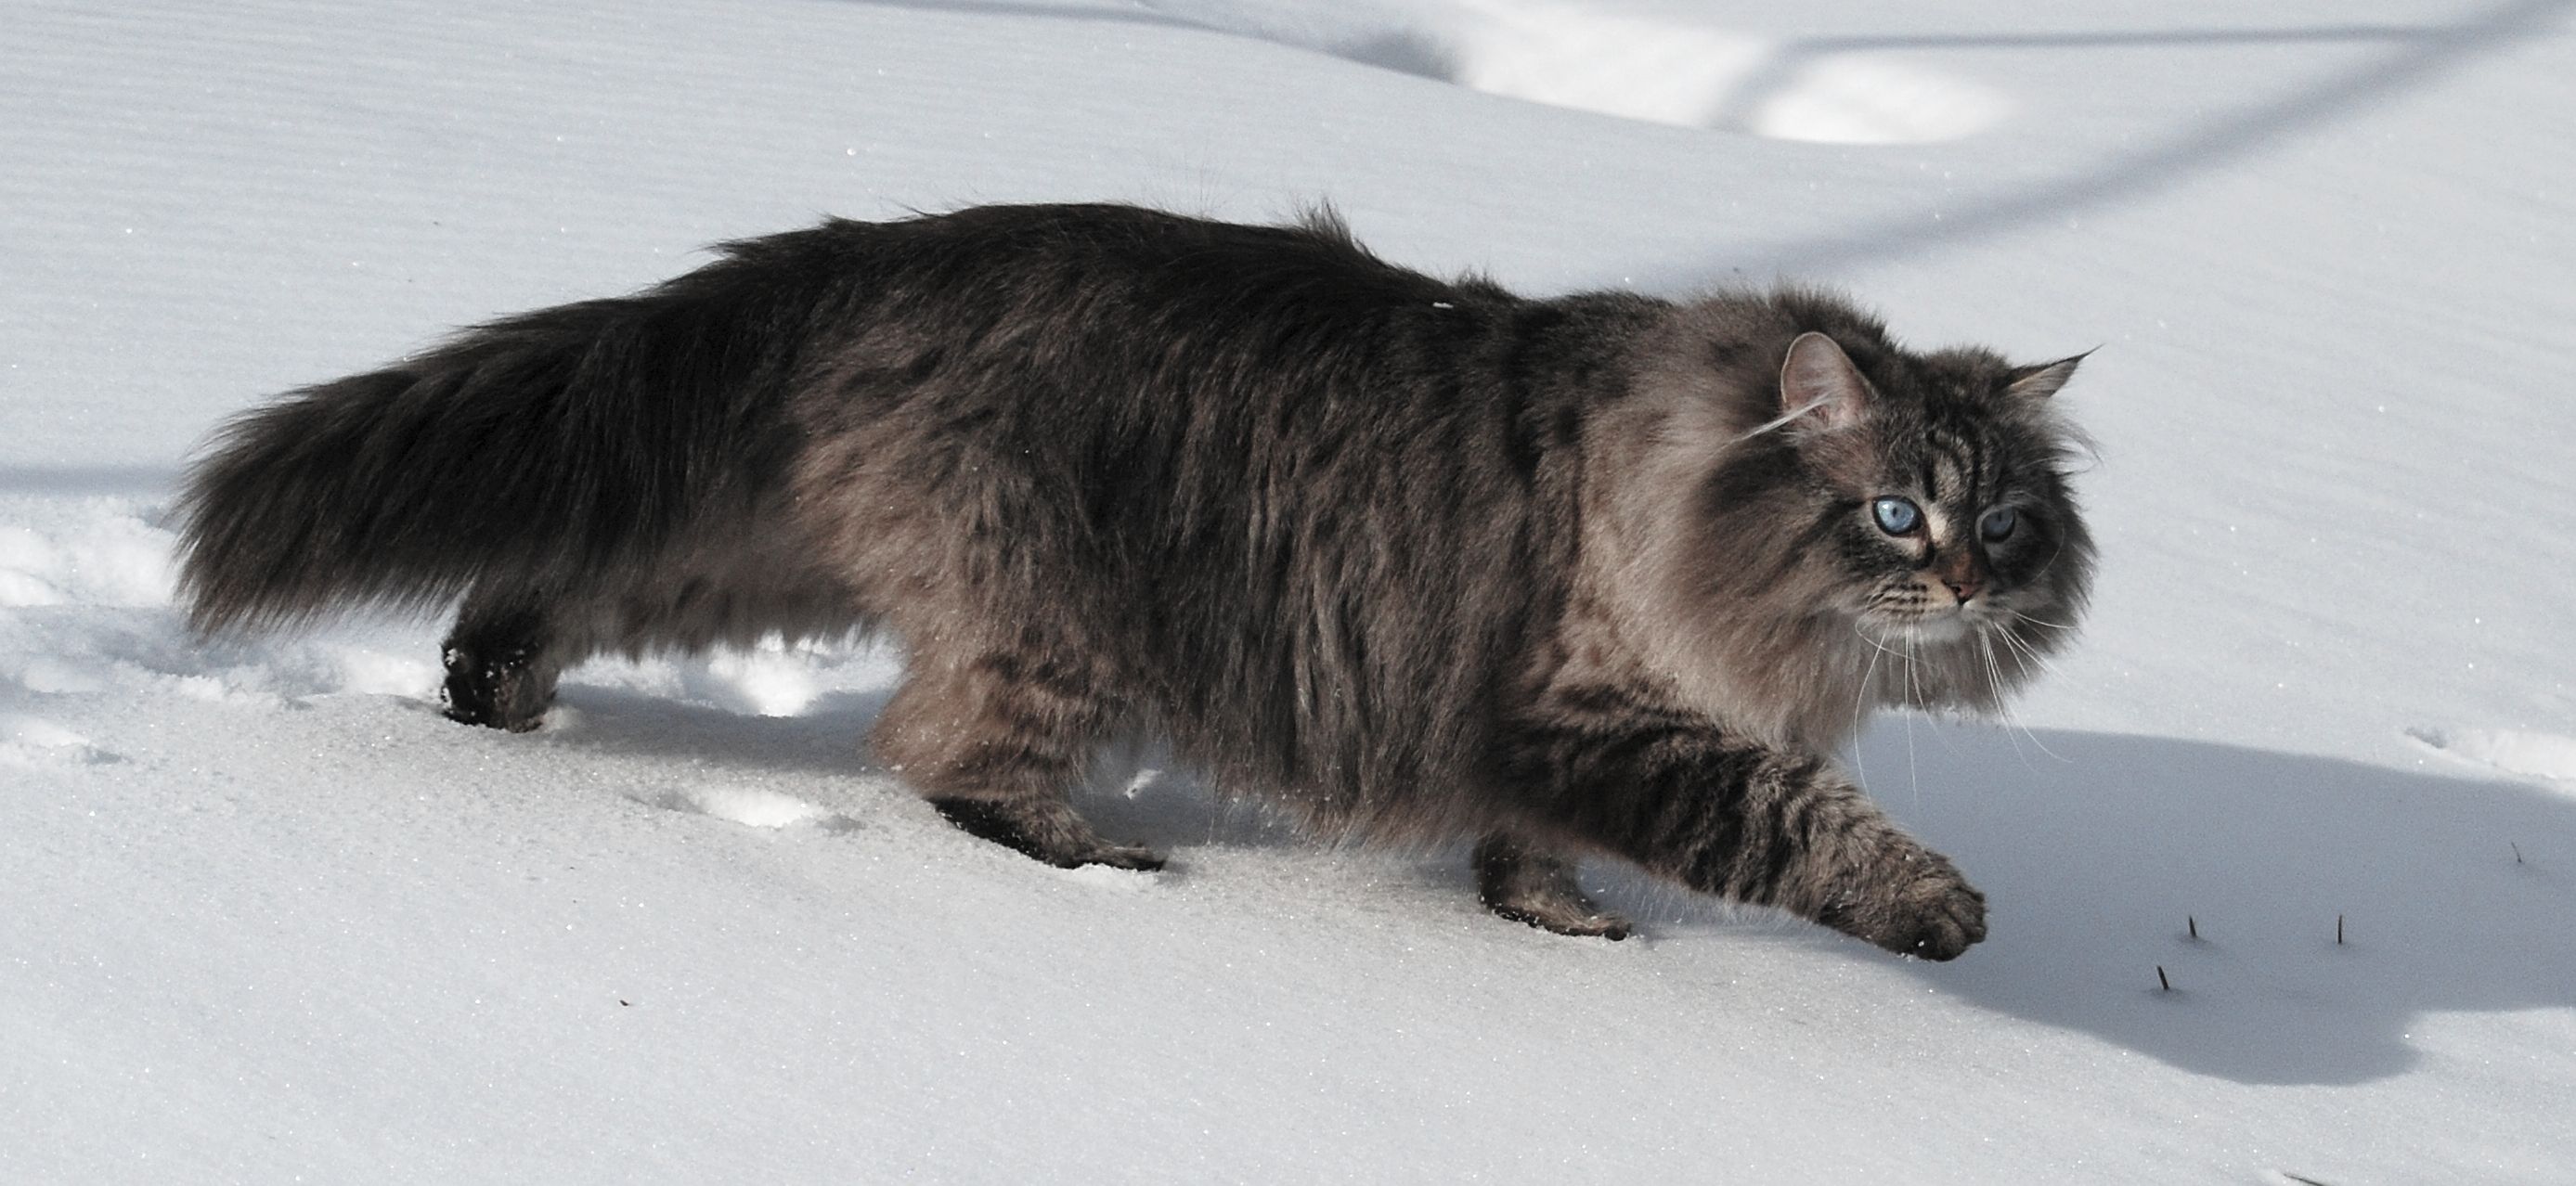 Kucing Siberia berjalan di salji